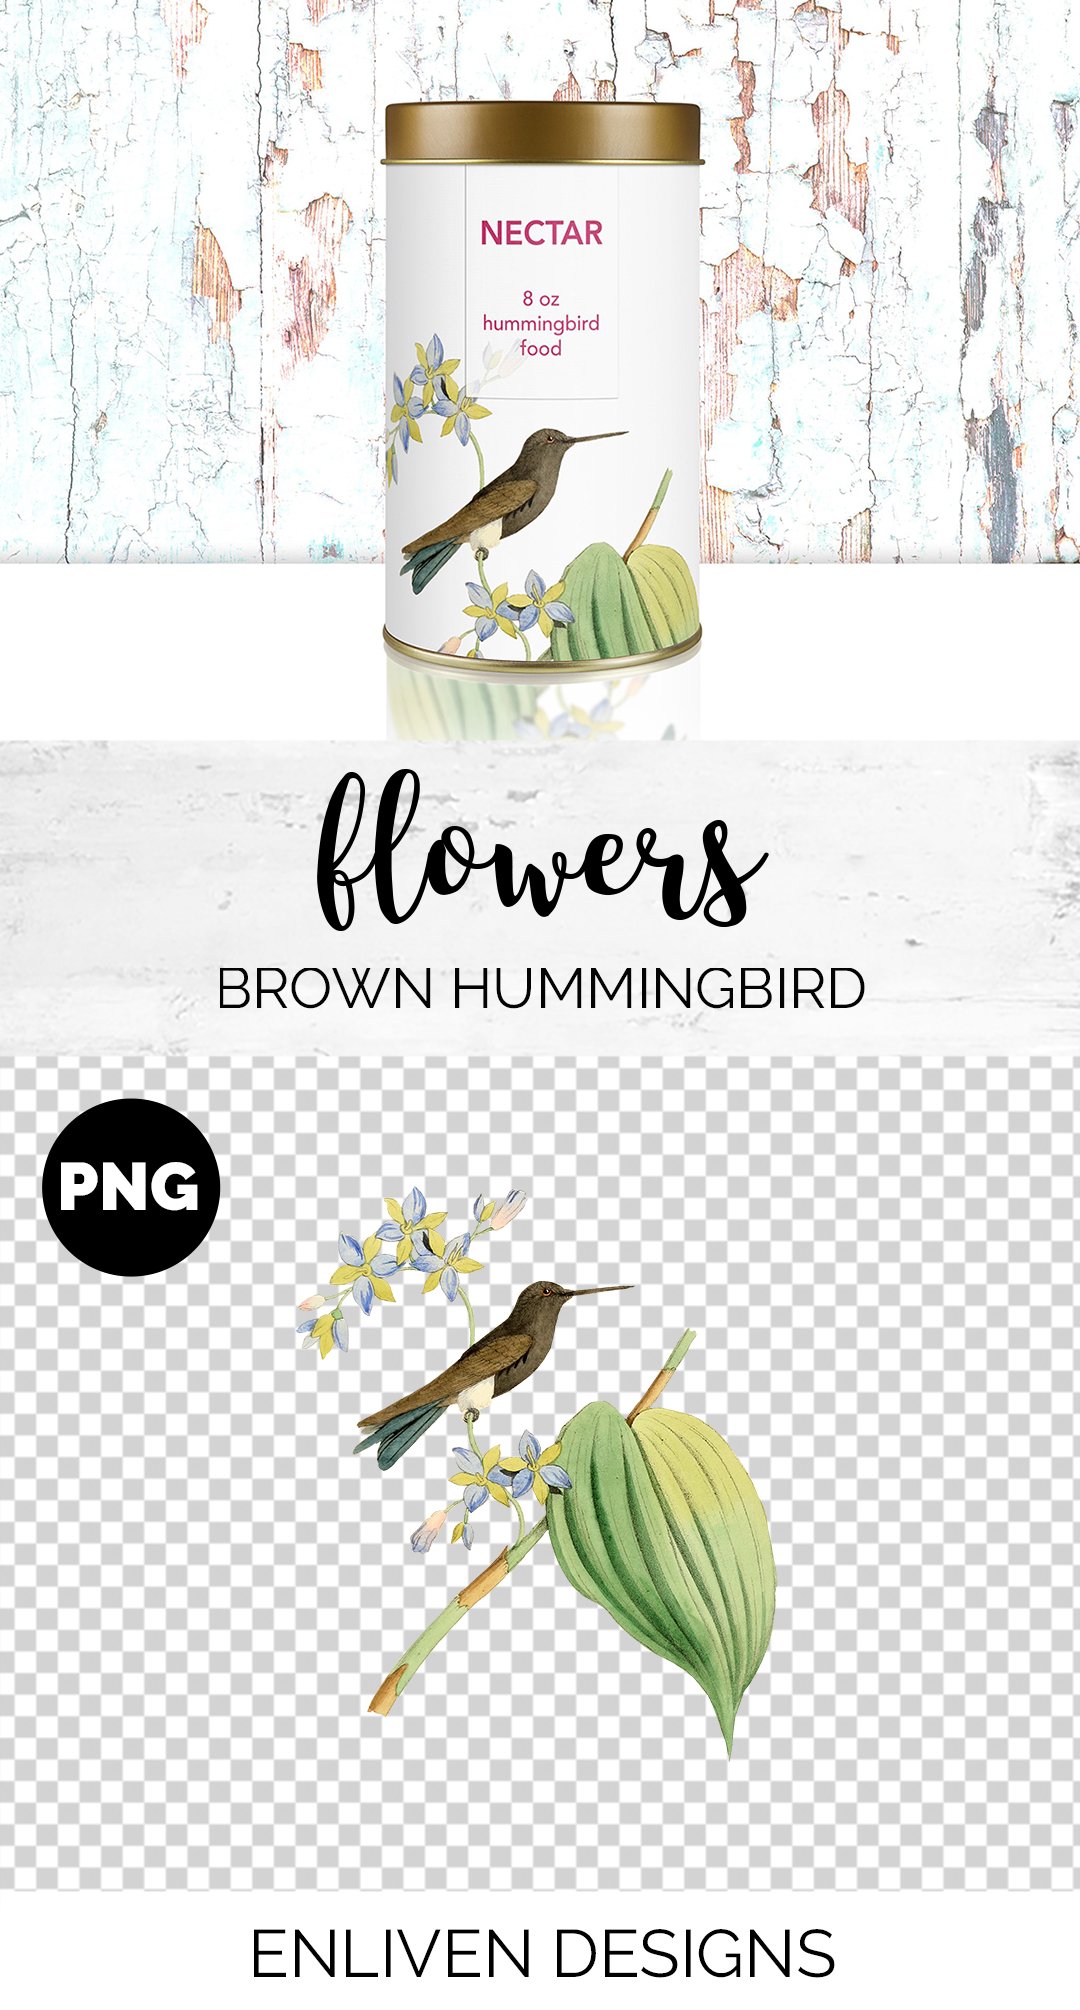 e01v01c 825 brown hummingbird b 793